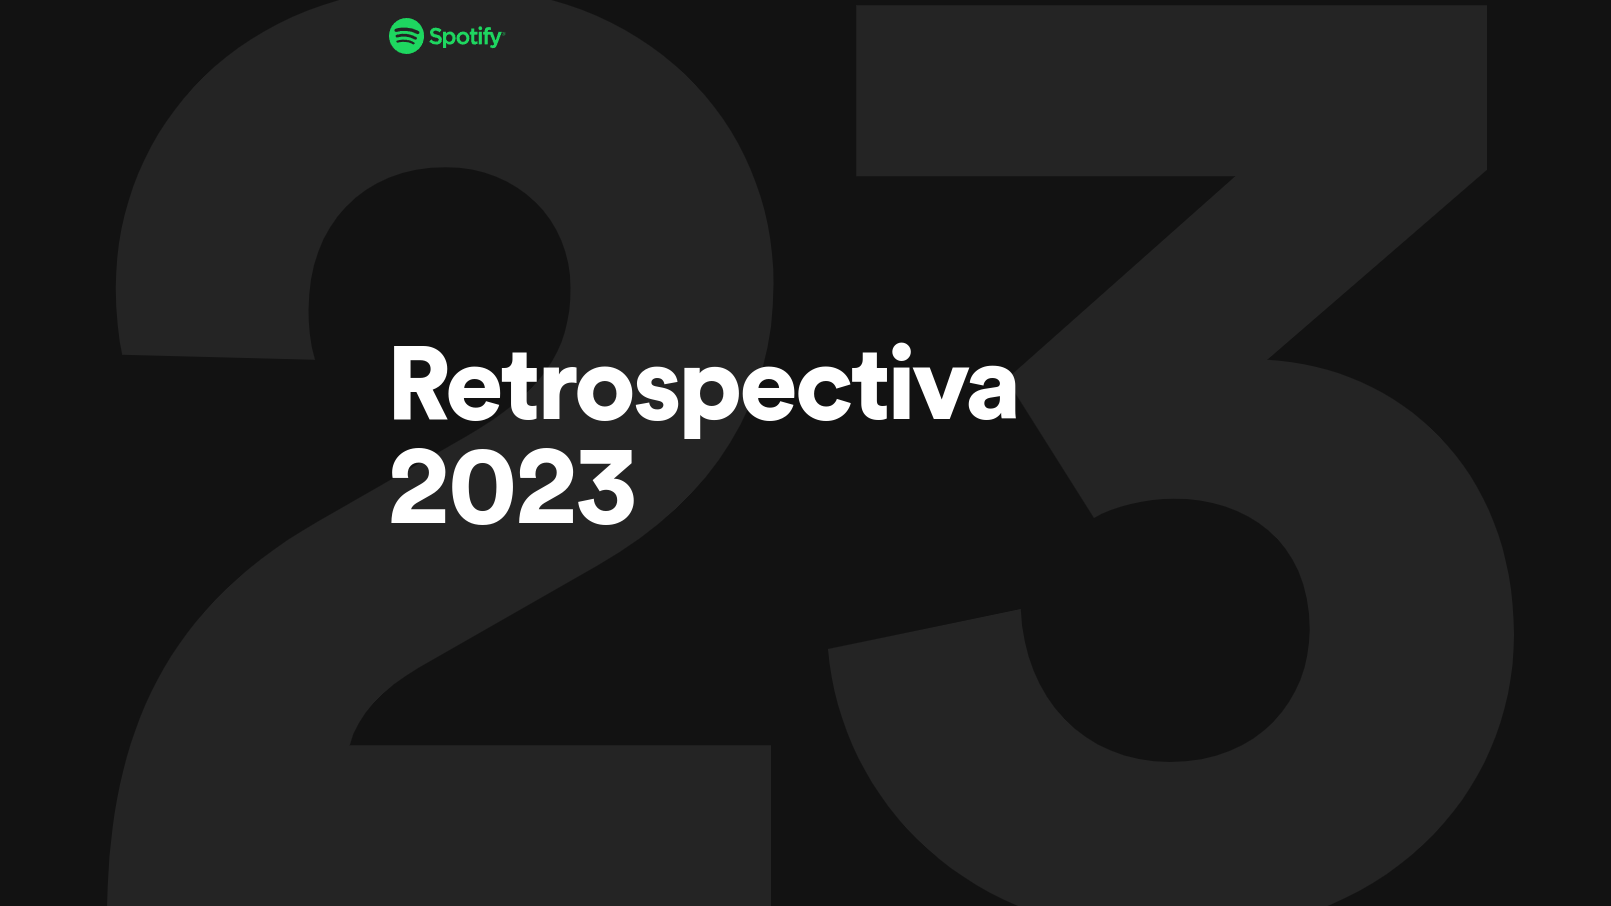 Spotify retrospectiva 2023: como ver seu resumo do ano com